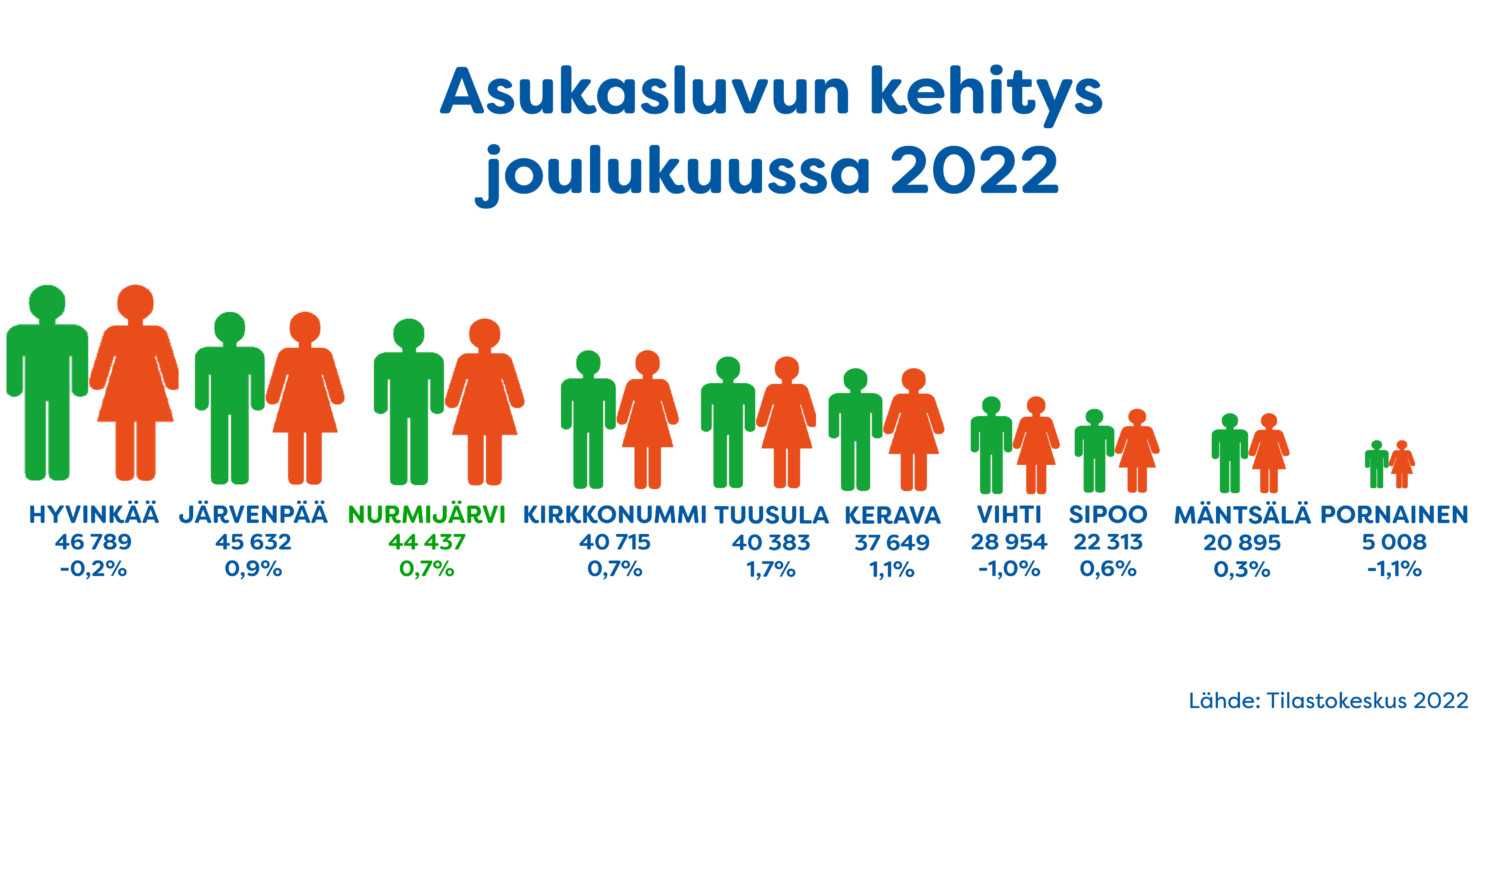 Asukasluvun kehitys joulukuussa 2022